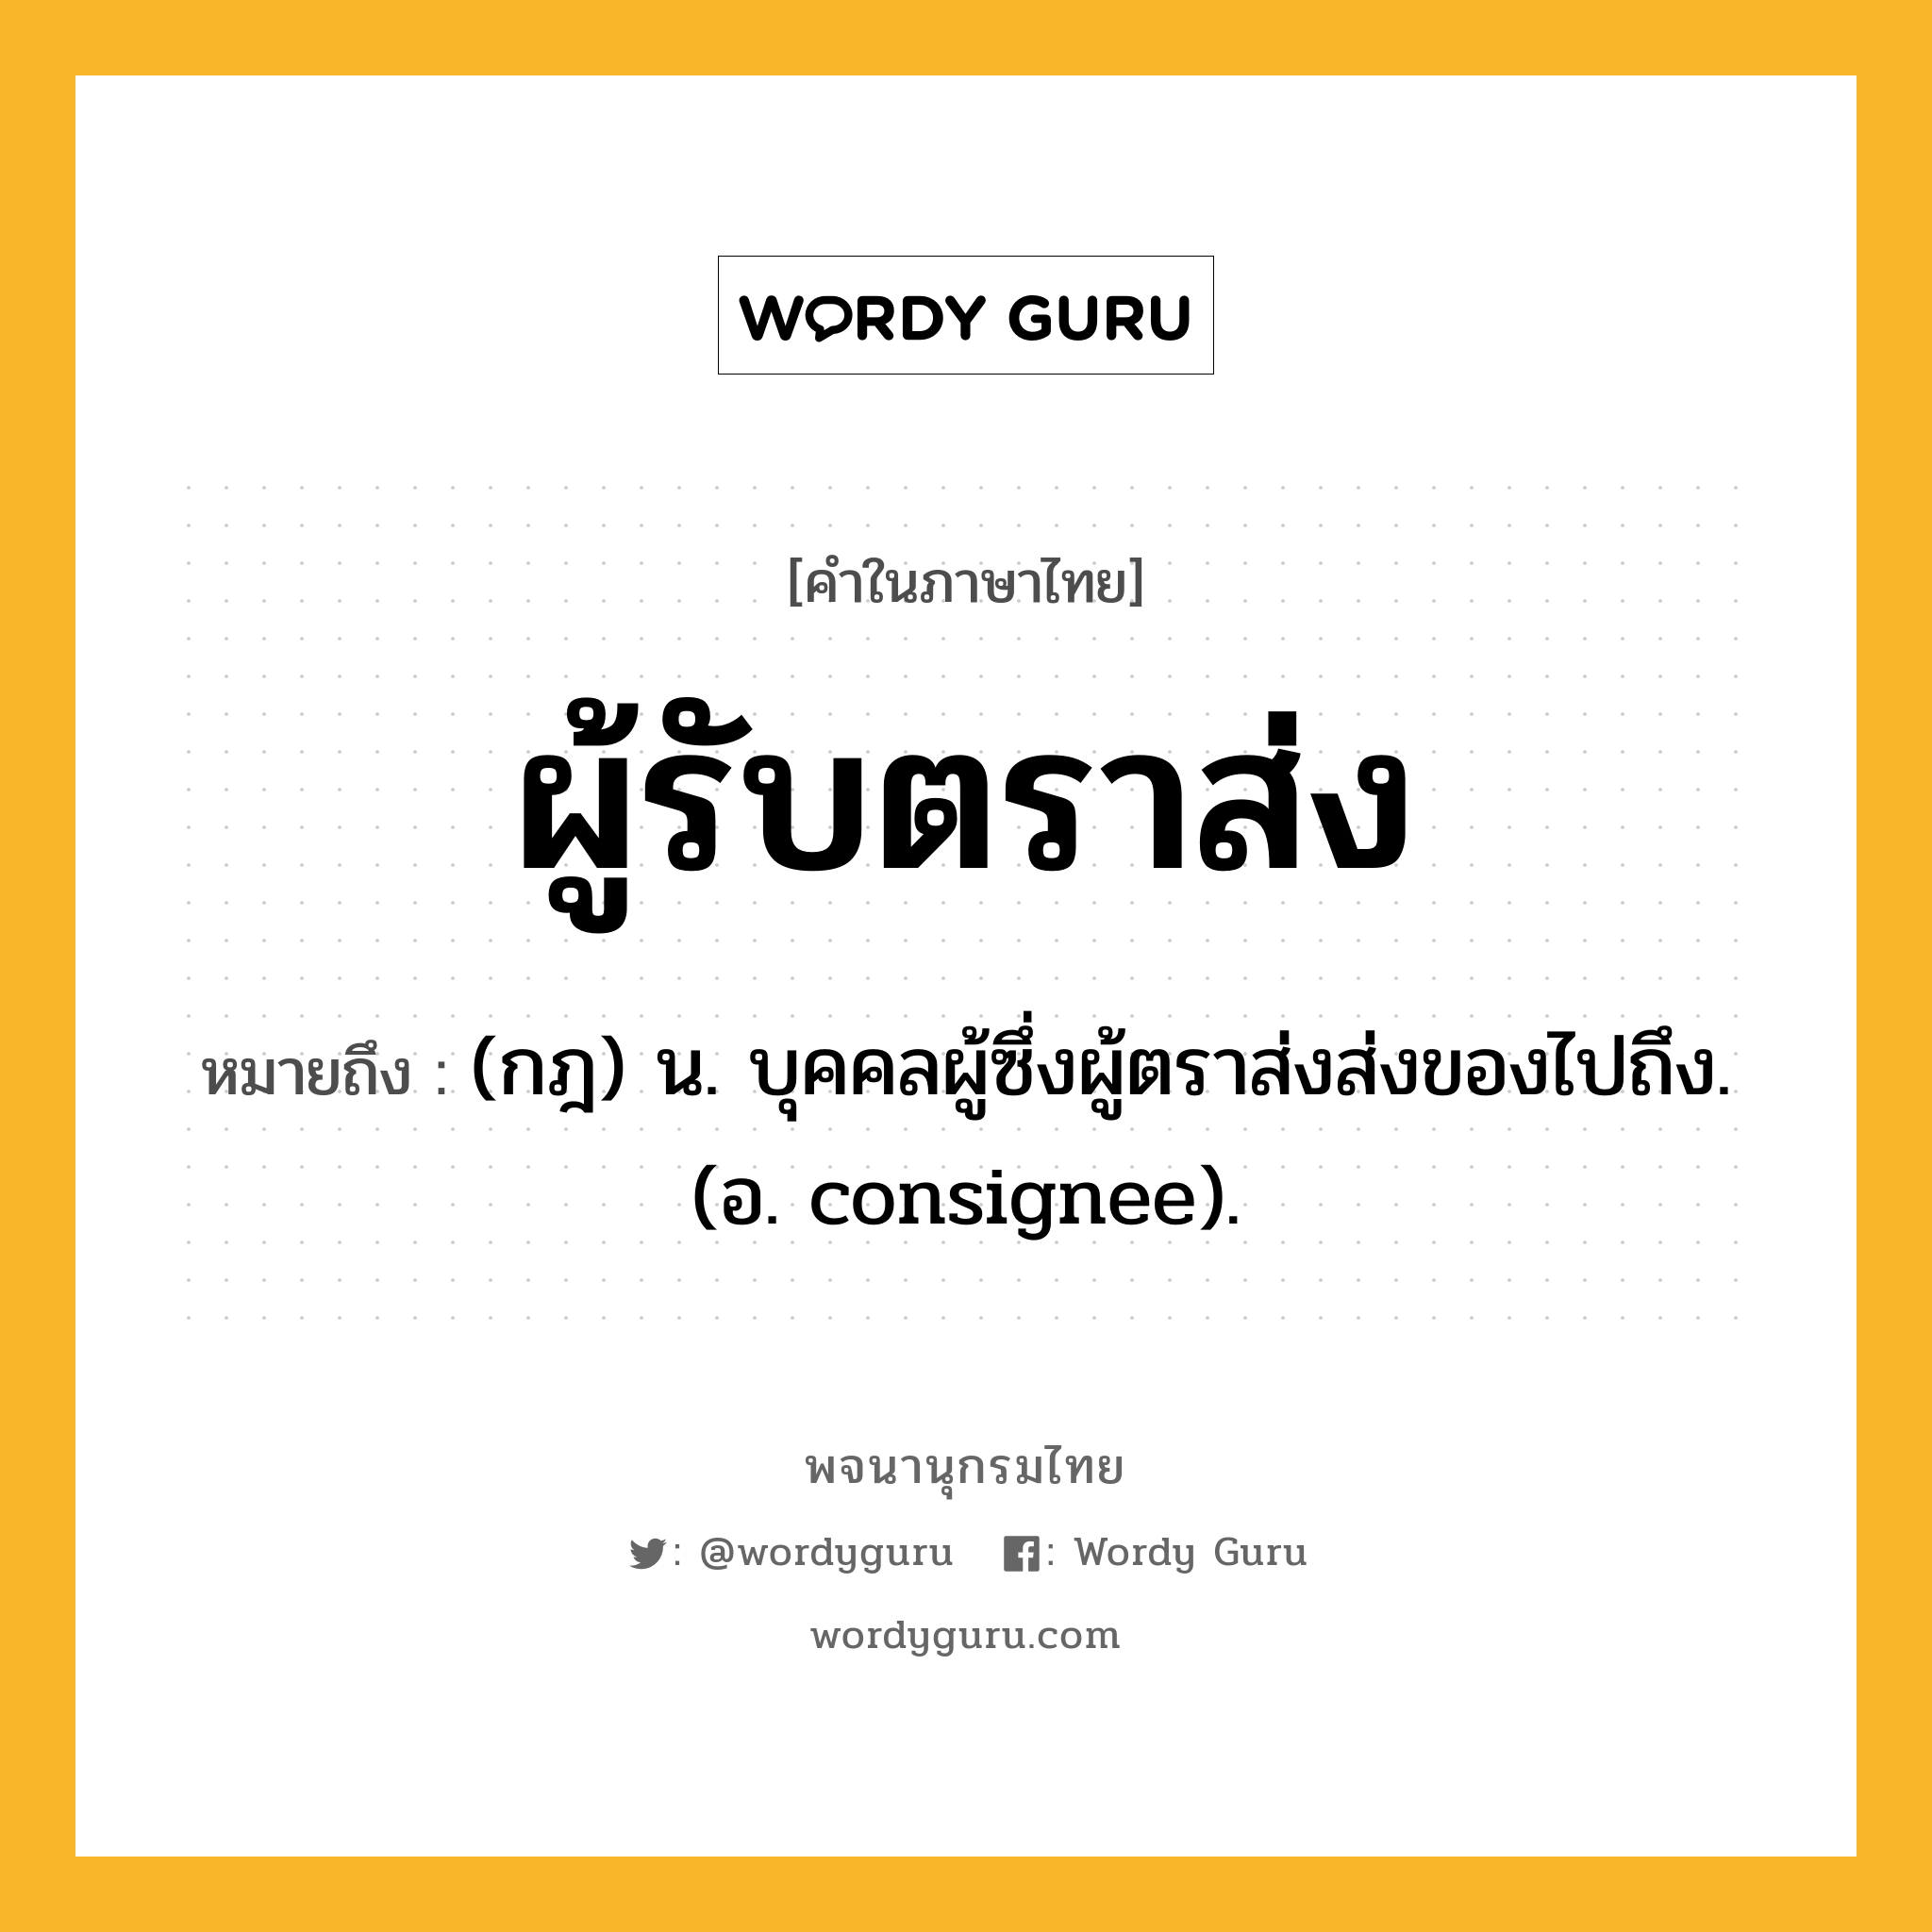 ผู้รับตราส่ง หมายถึงอะไร?, คำในภาษาไทย ผู้รับตราส่ง หมายถึง (กฎ) น. บุคคลผู้ซึ่งผู้ตราส่งส่งของไปถึง. (อ. consignee).